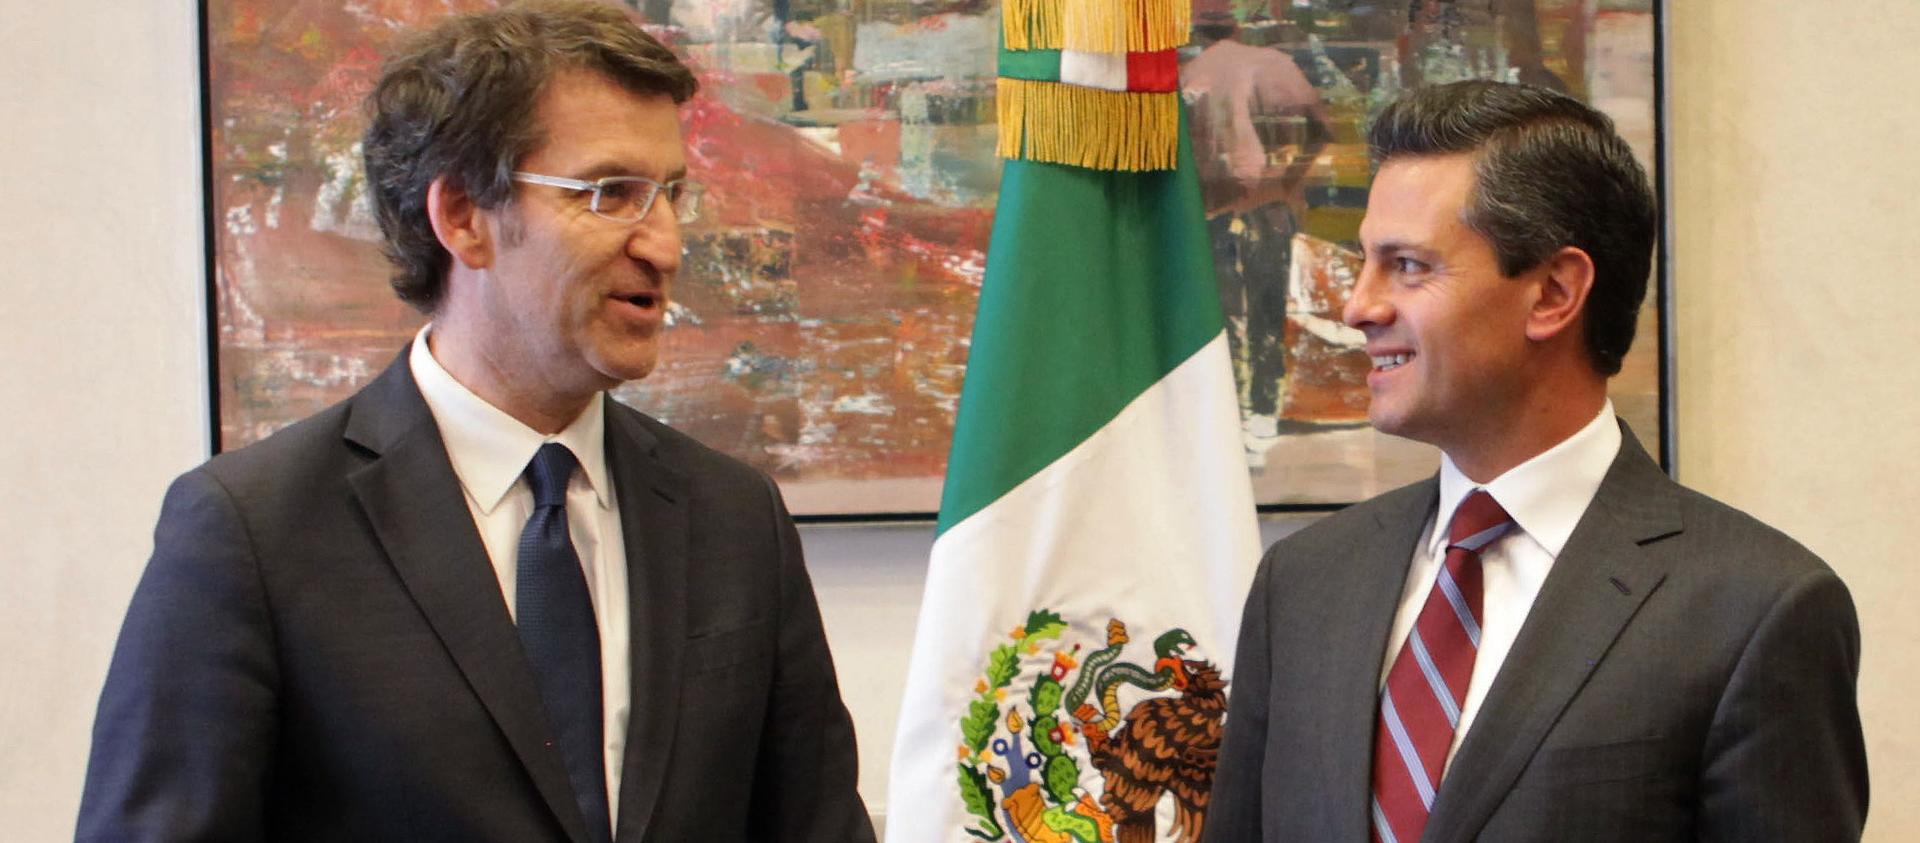 Feijóo y Mar Sánchez Sierra acaparan la atención de la Prensa Nacional e  Internacional en México y EE.UU por sus vinculos con la corrupción de Pemex  y la detención de Lozoya -